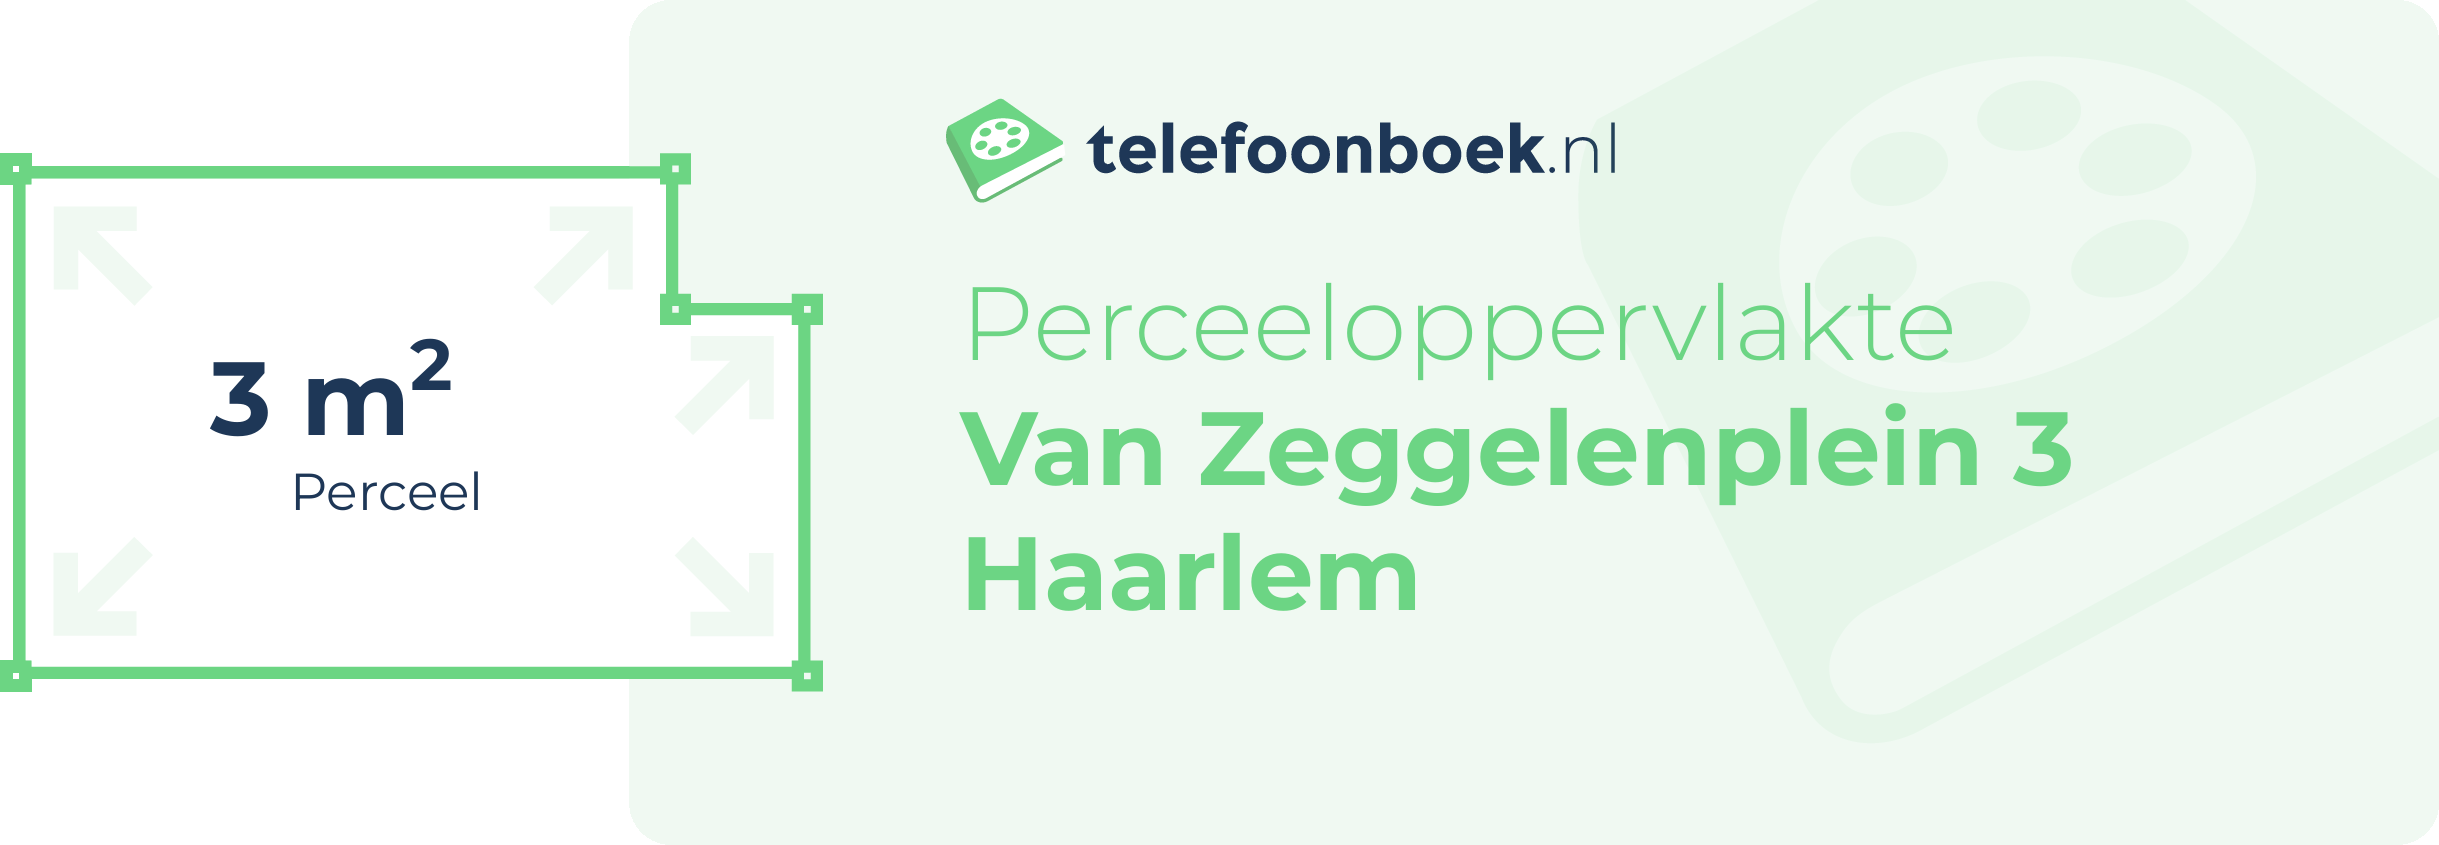 Perceeloppervlakte Van Zeggelenplein 3 Haarlem